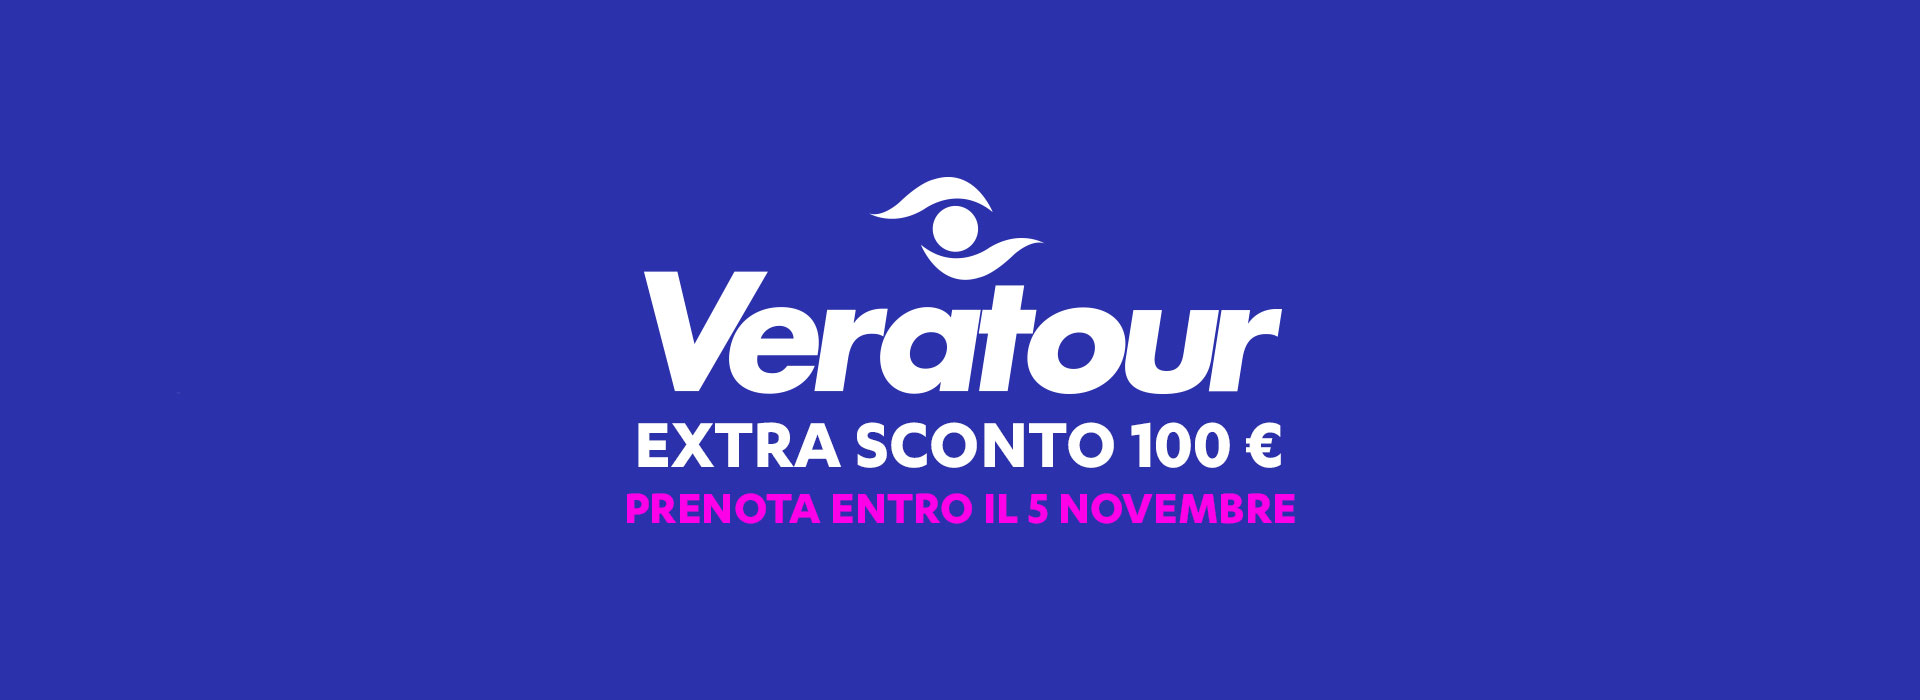 Promozione Veratour: Extra sconto 100 €